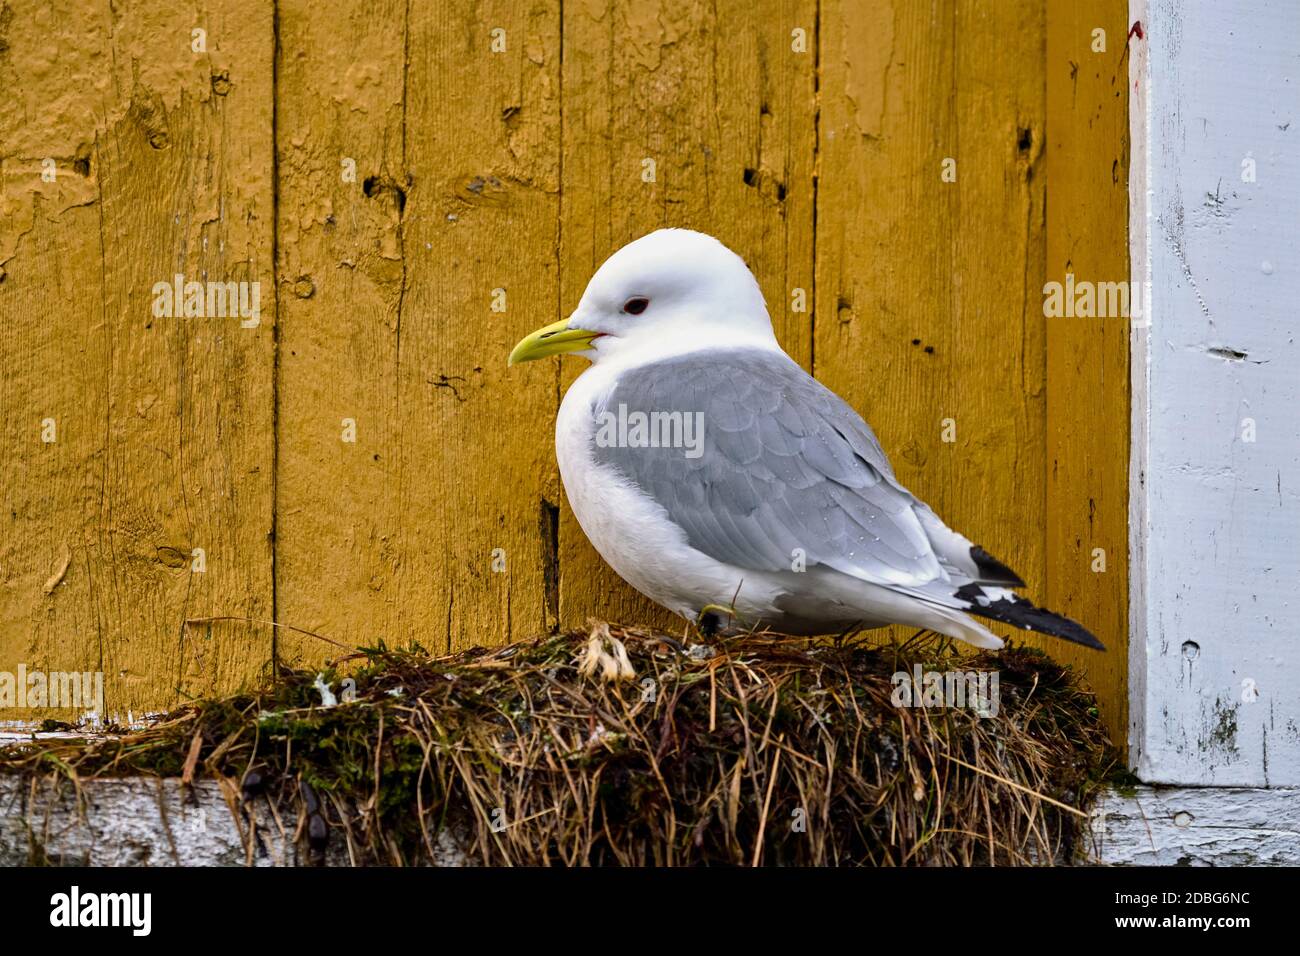 Mouette oiseau contre mur jaune. Les îles Lofoten, Norvège Banque D'Images